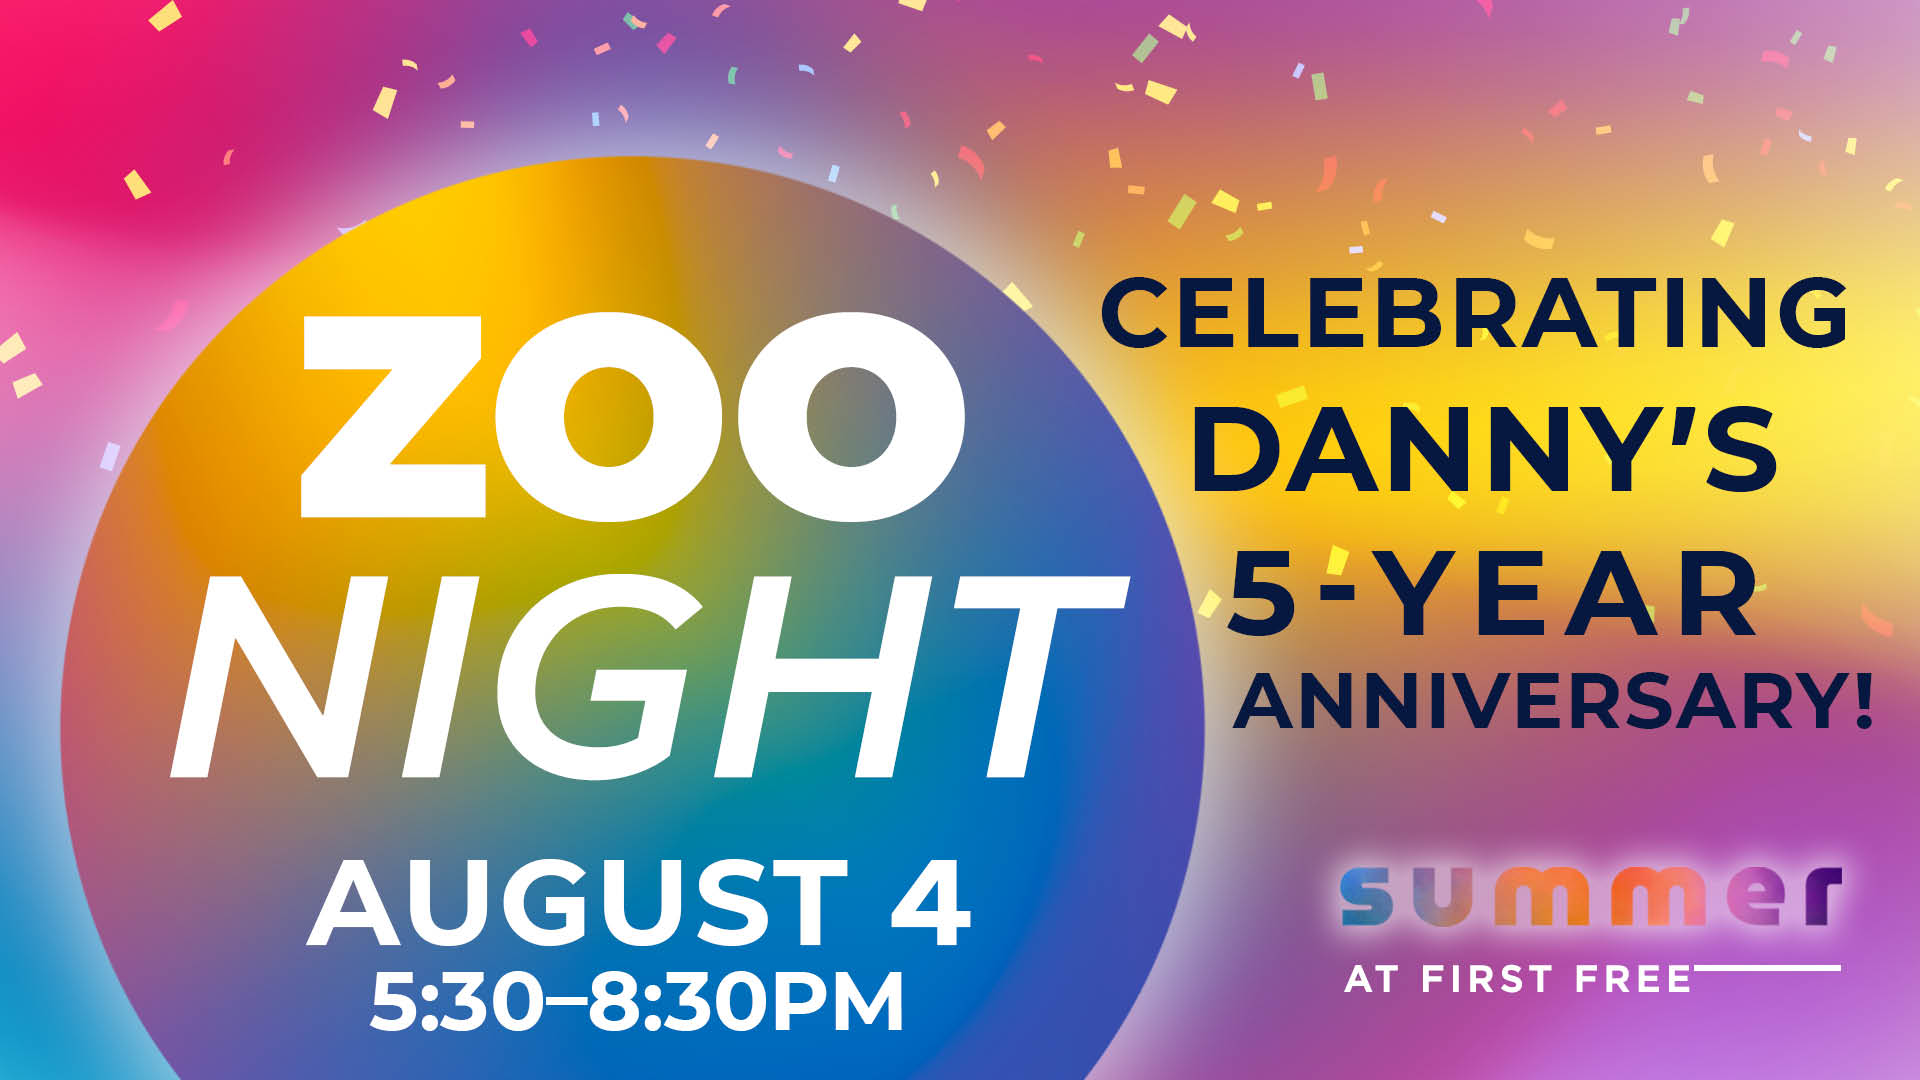 Zoo Night: Celebrating Danny's 5-year anniversary